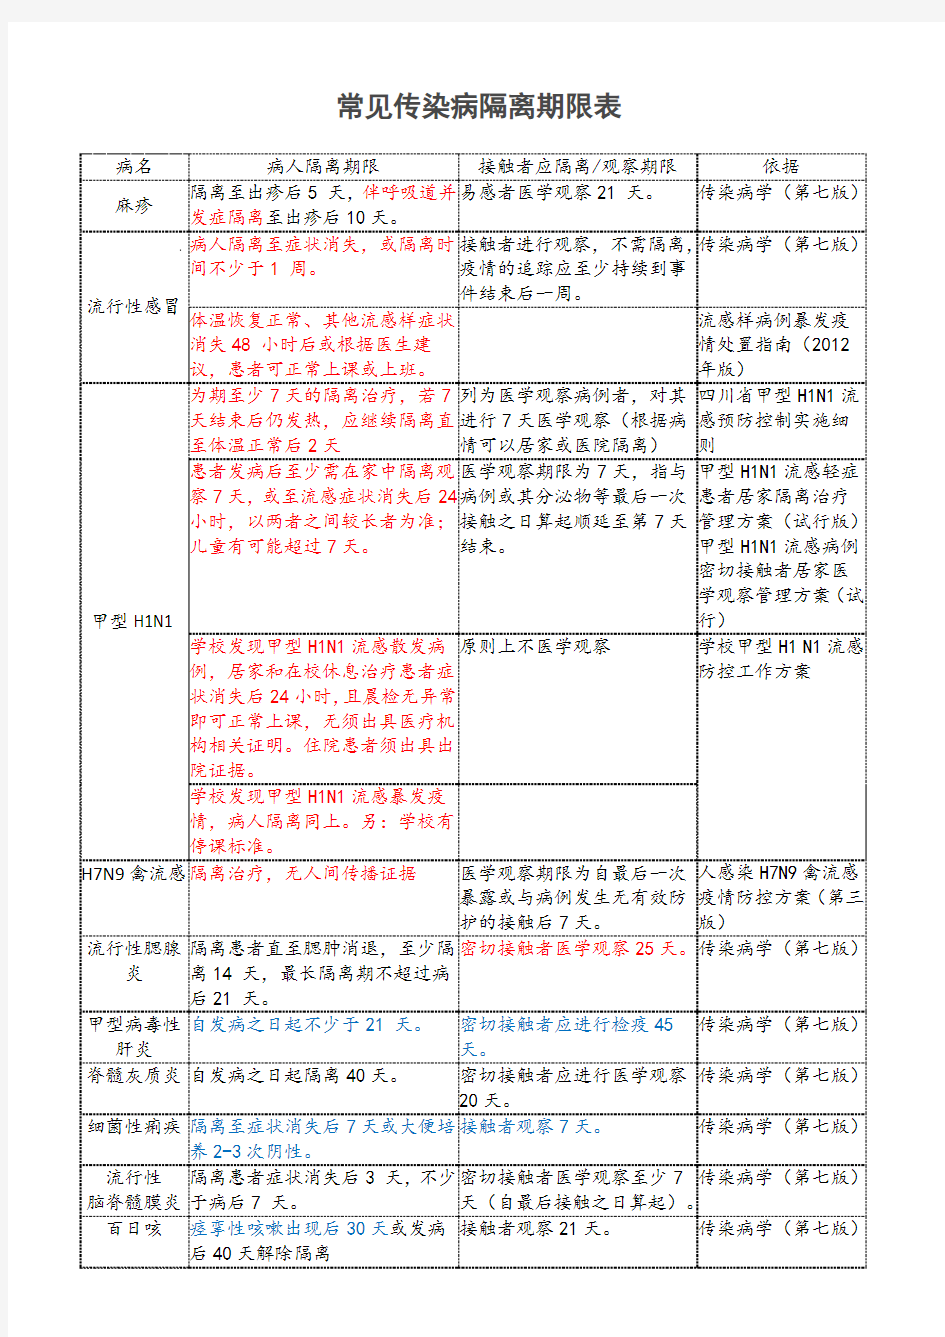 常见传染病隔离期限表(最新整理)